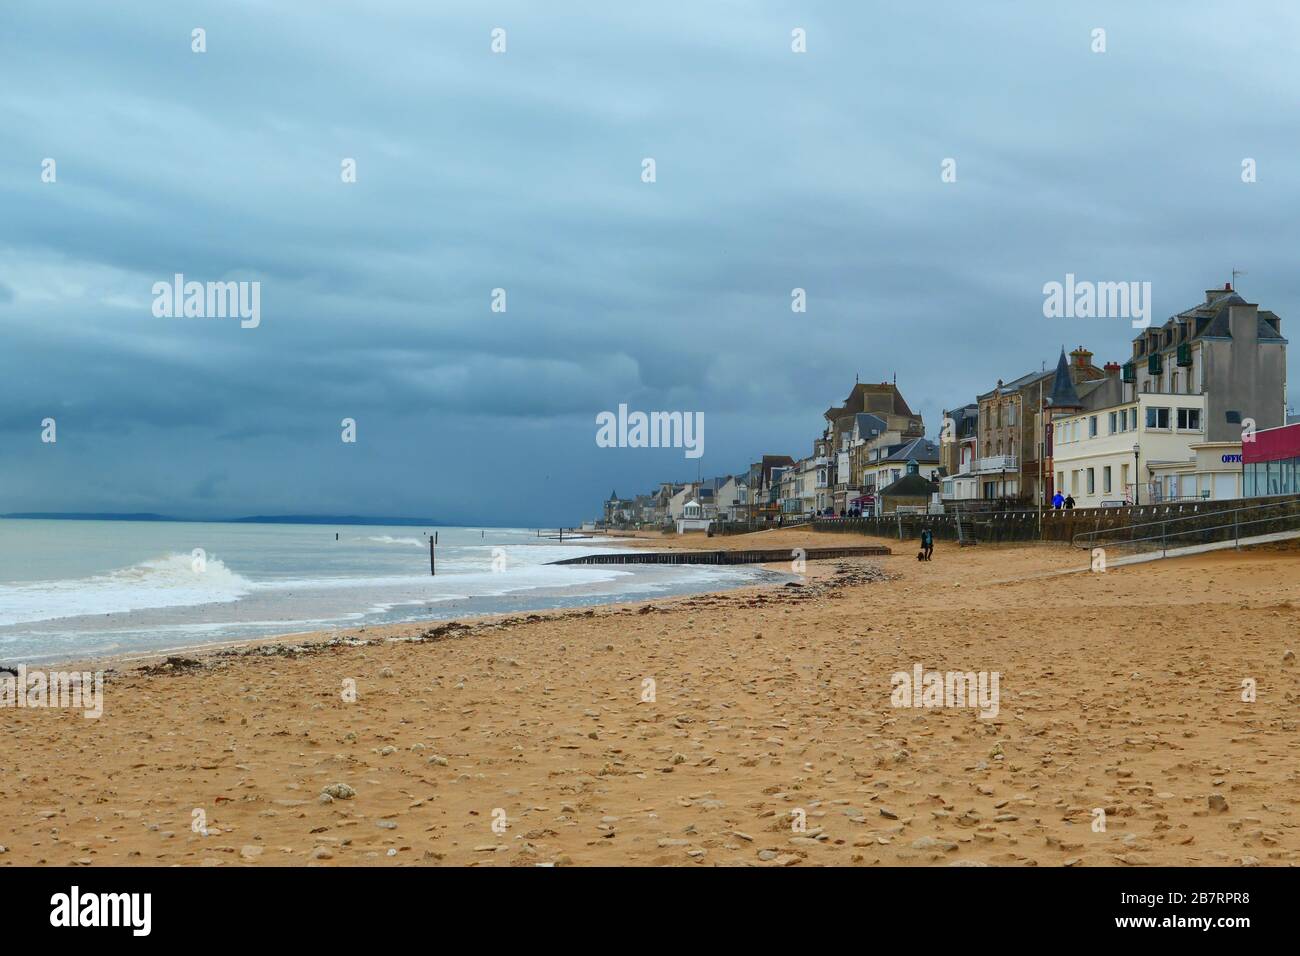 La plage de Saint-Aubin-sur-Mer dans le département du Calvados en Normandie, France, Europe Banque D'Images